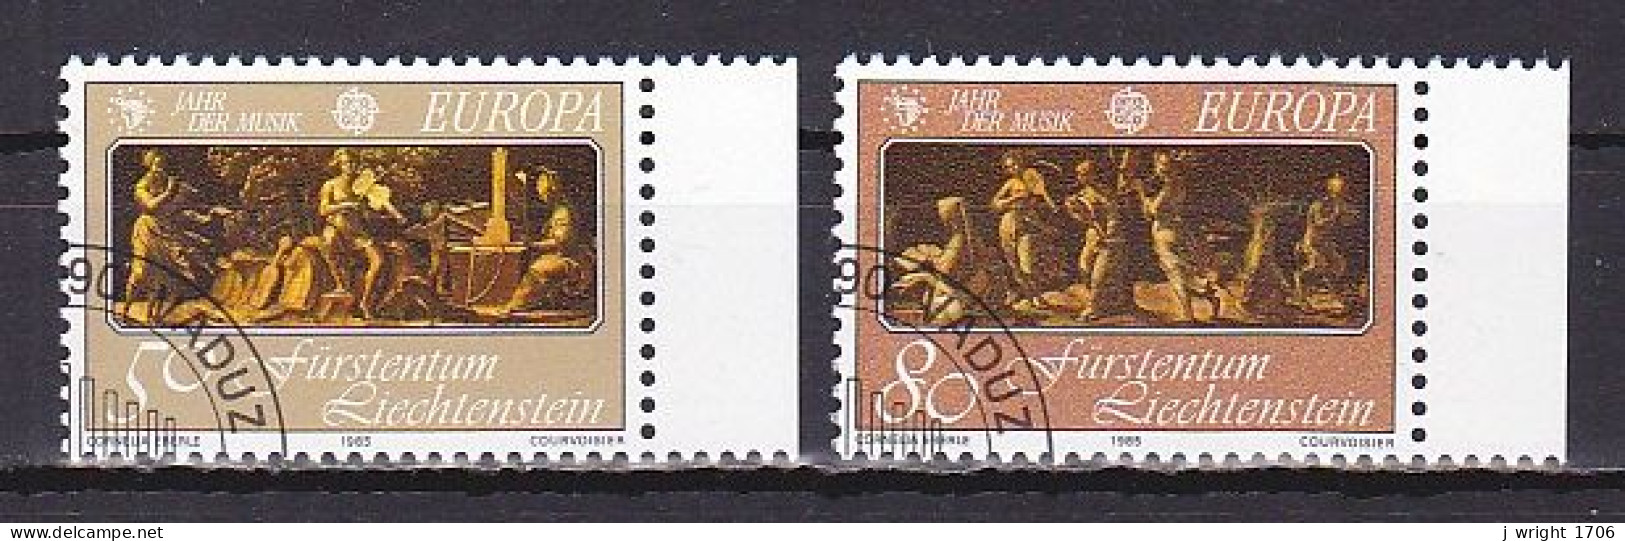 Liechtenstein, 1985, Europa CEPT, Set, CTO - Used Stamps